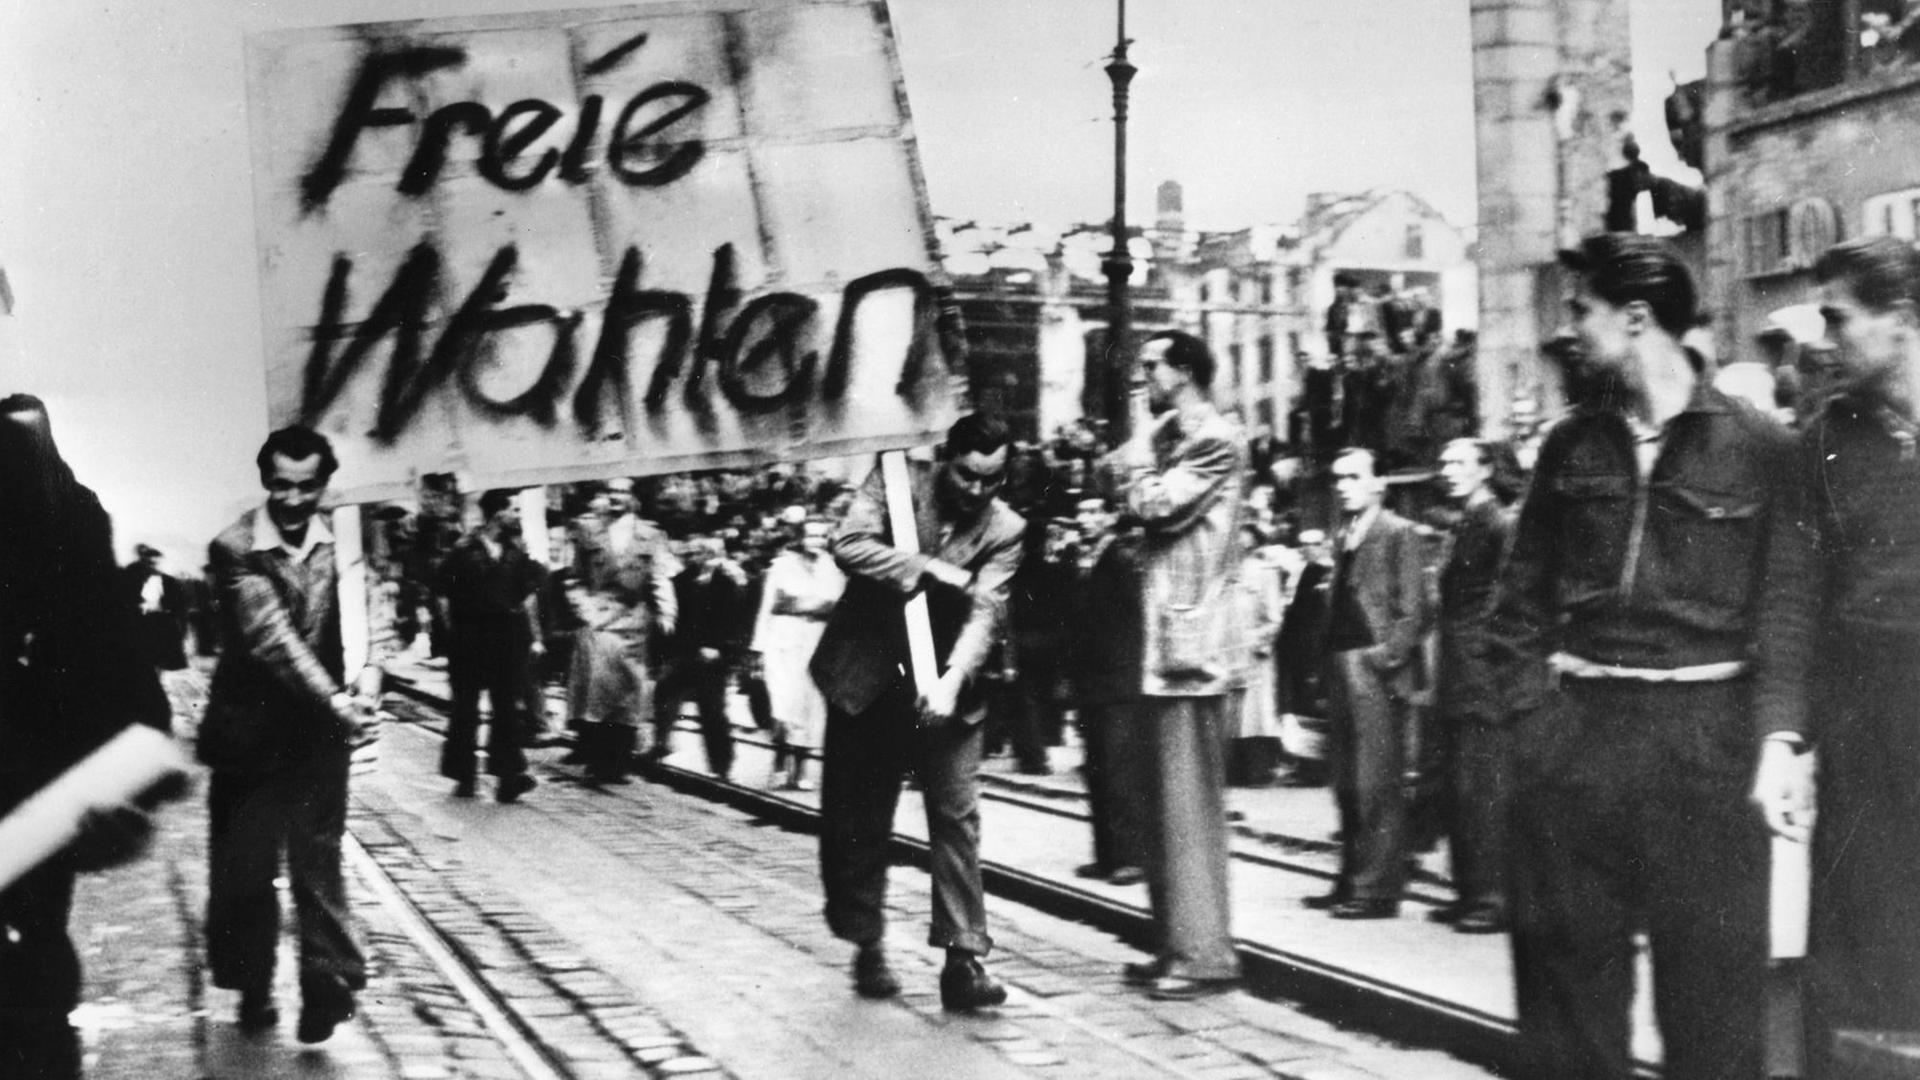 Demonstranten tragen ein Plakat mit der Aufschrift "Freie Wahlen" durch Ostberlin.